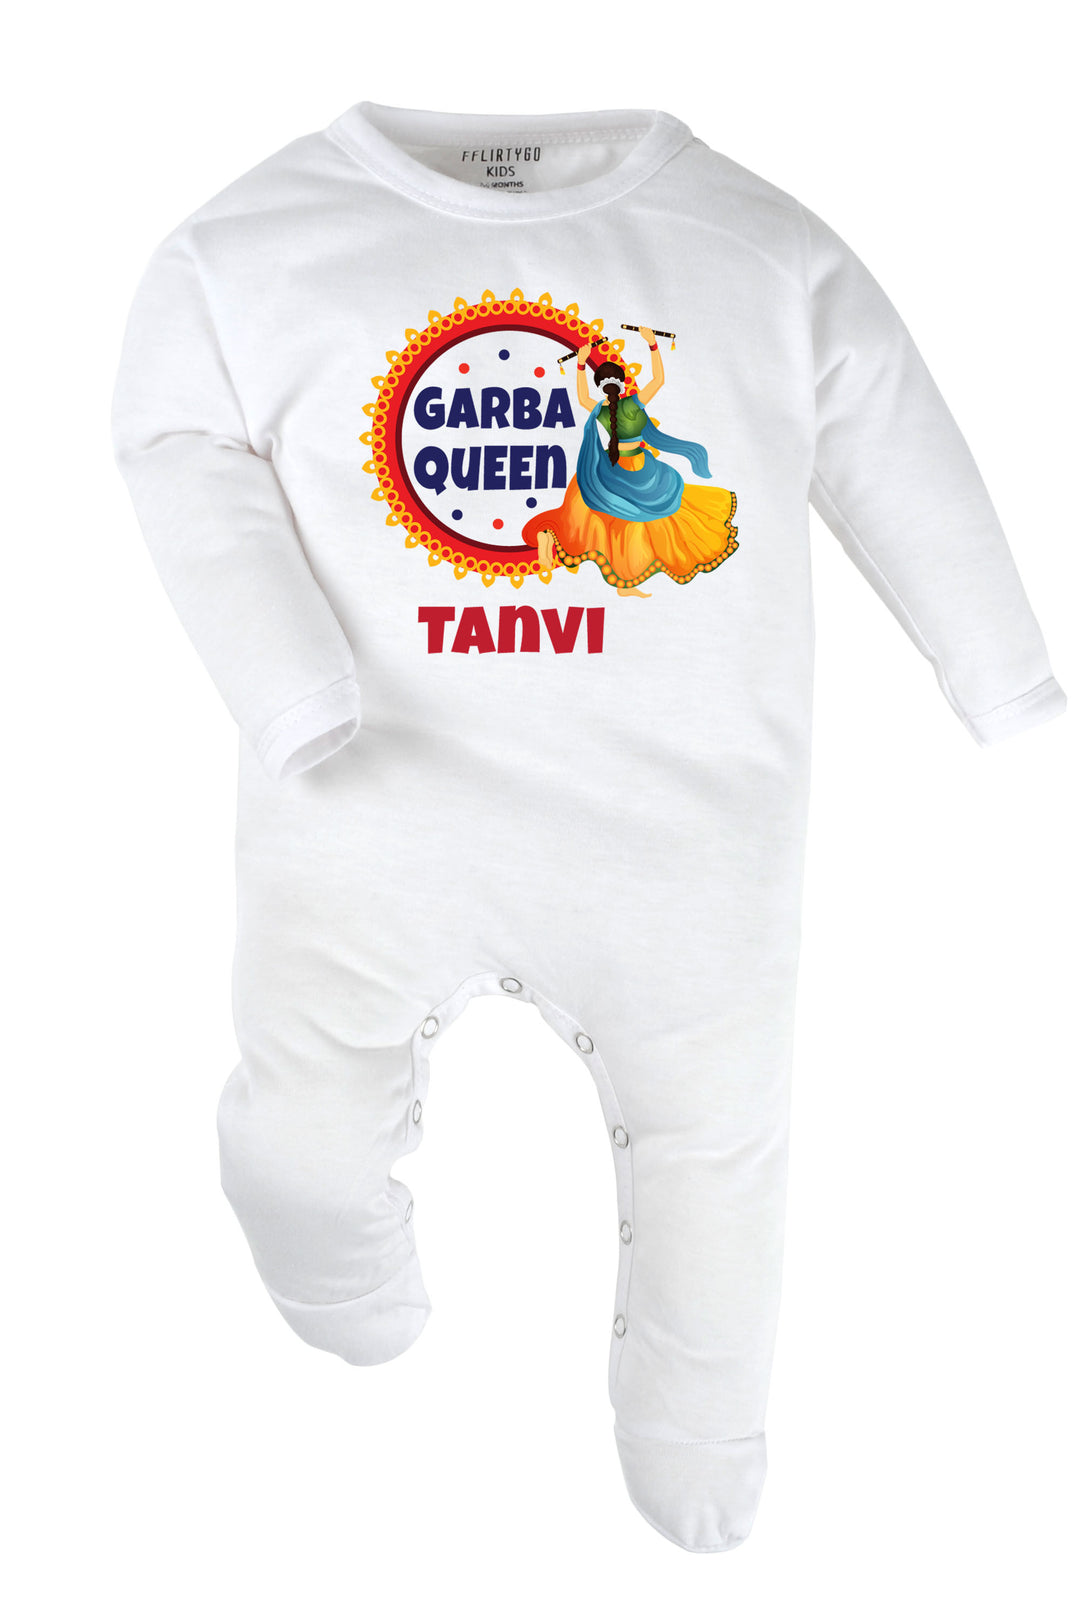 Garba Queen Baby Romper | Onesies w/ Custom Name